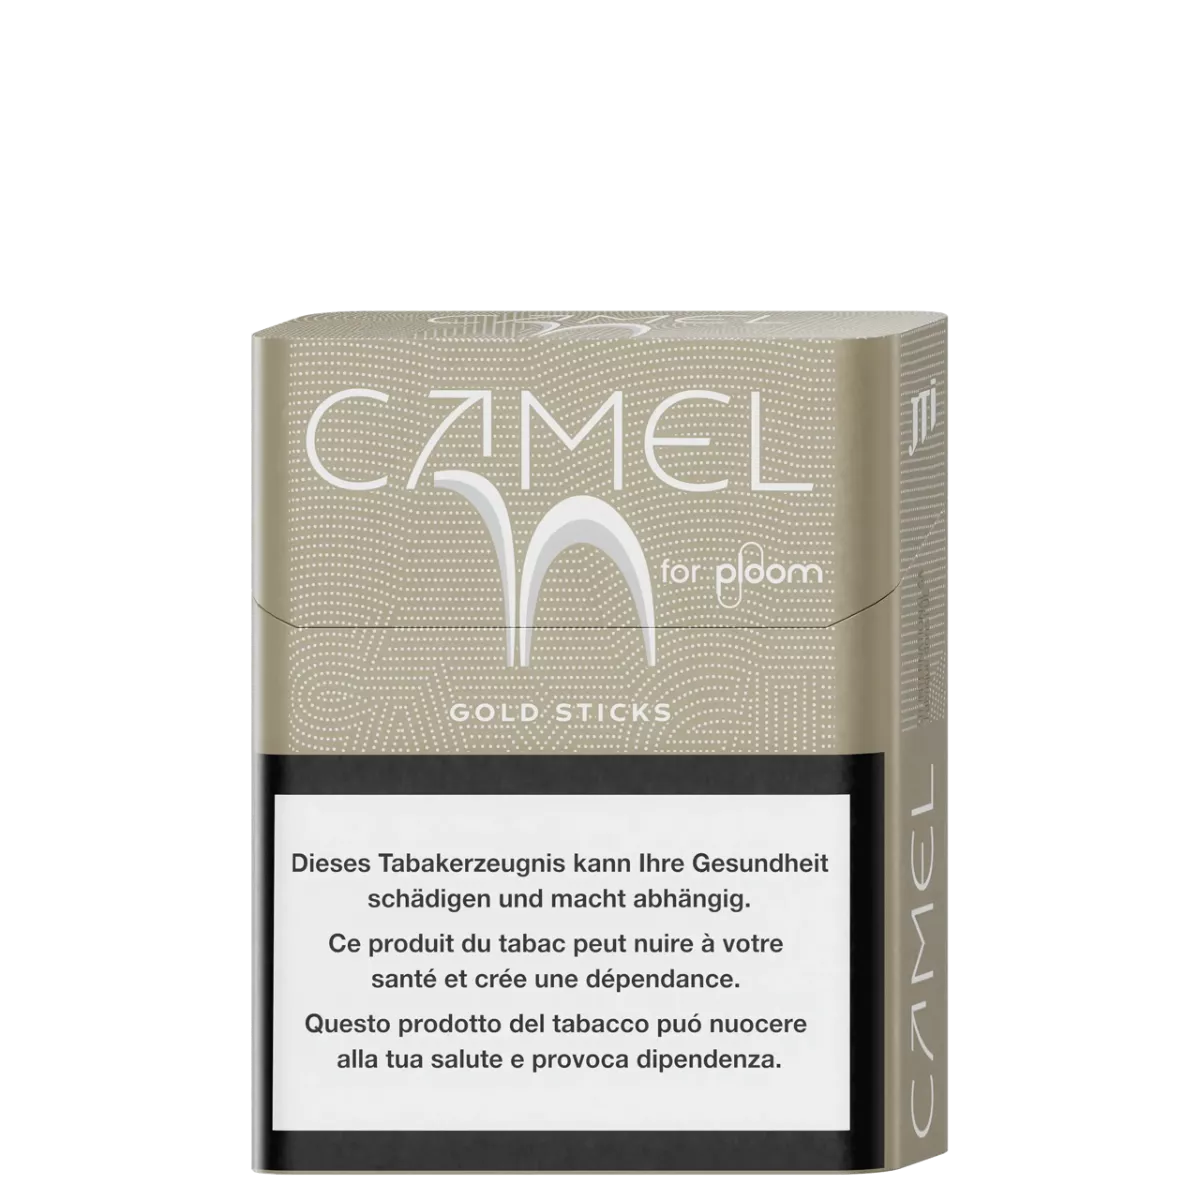 Camel Gold sticks for Ploom pack
